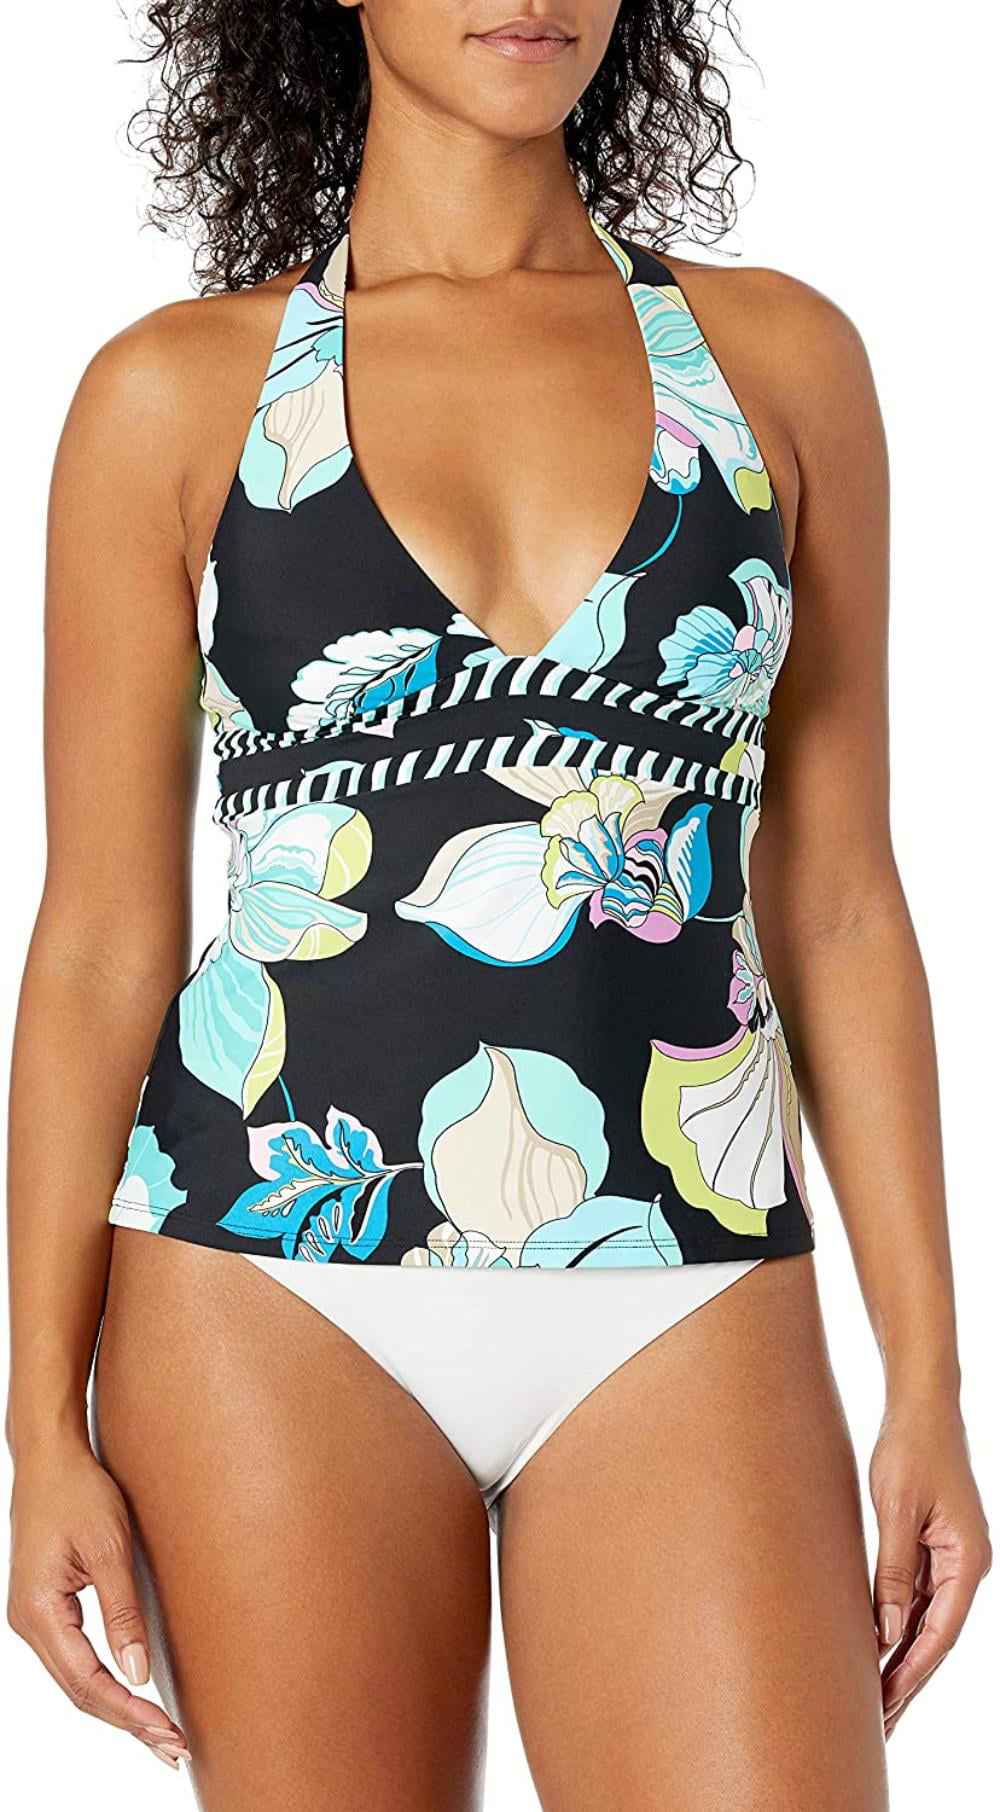 Mae Womens Swimwear Trina Cross Back Printed Bikini Top for A-C cups Brand